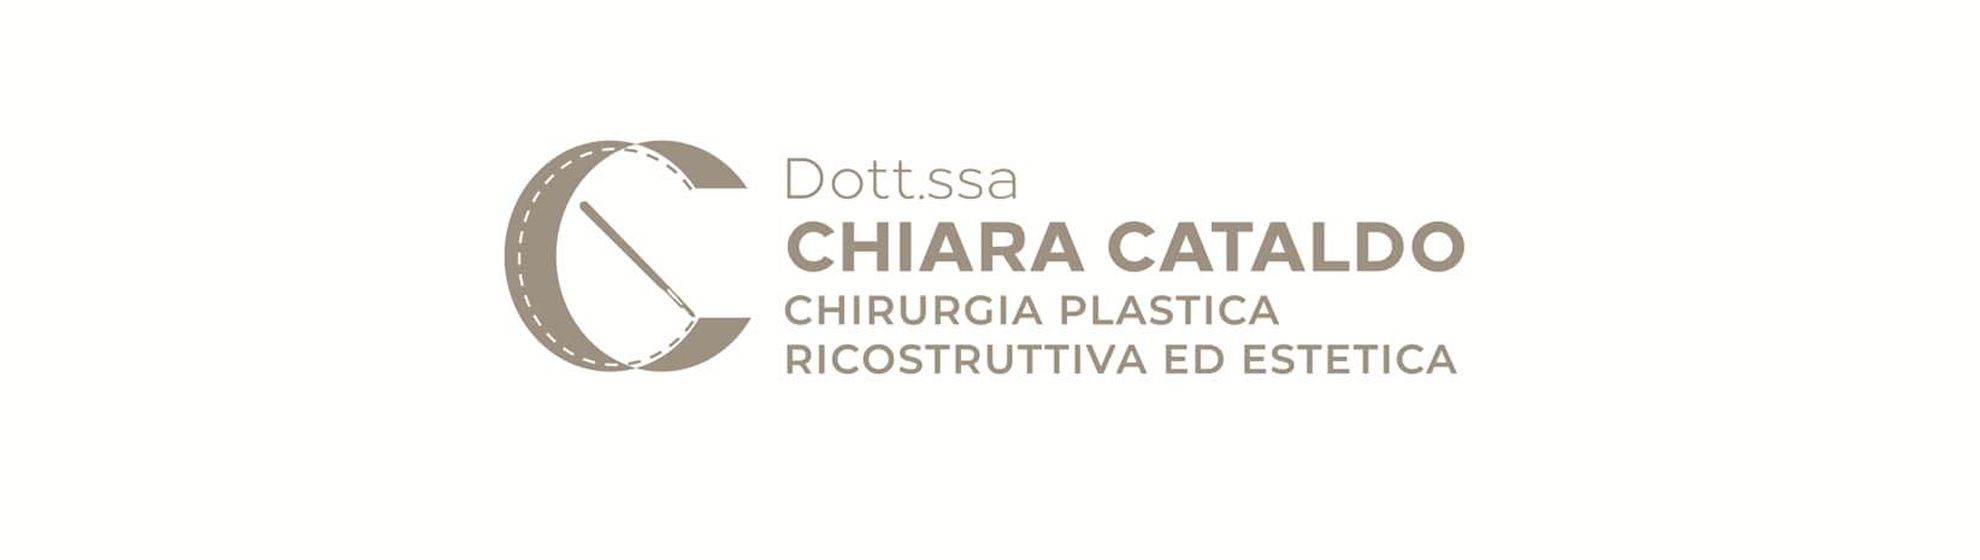 Dott.ssa Chiara Cataldo